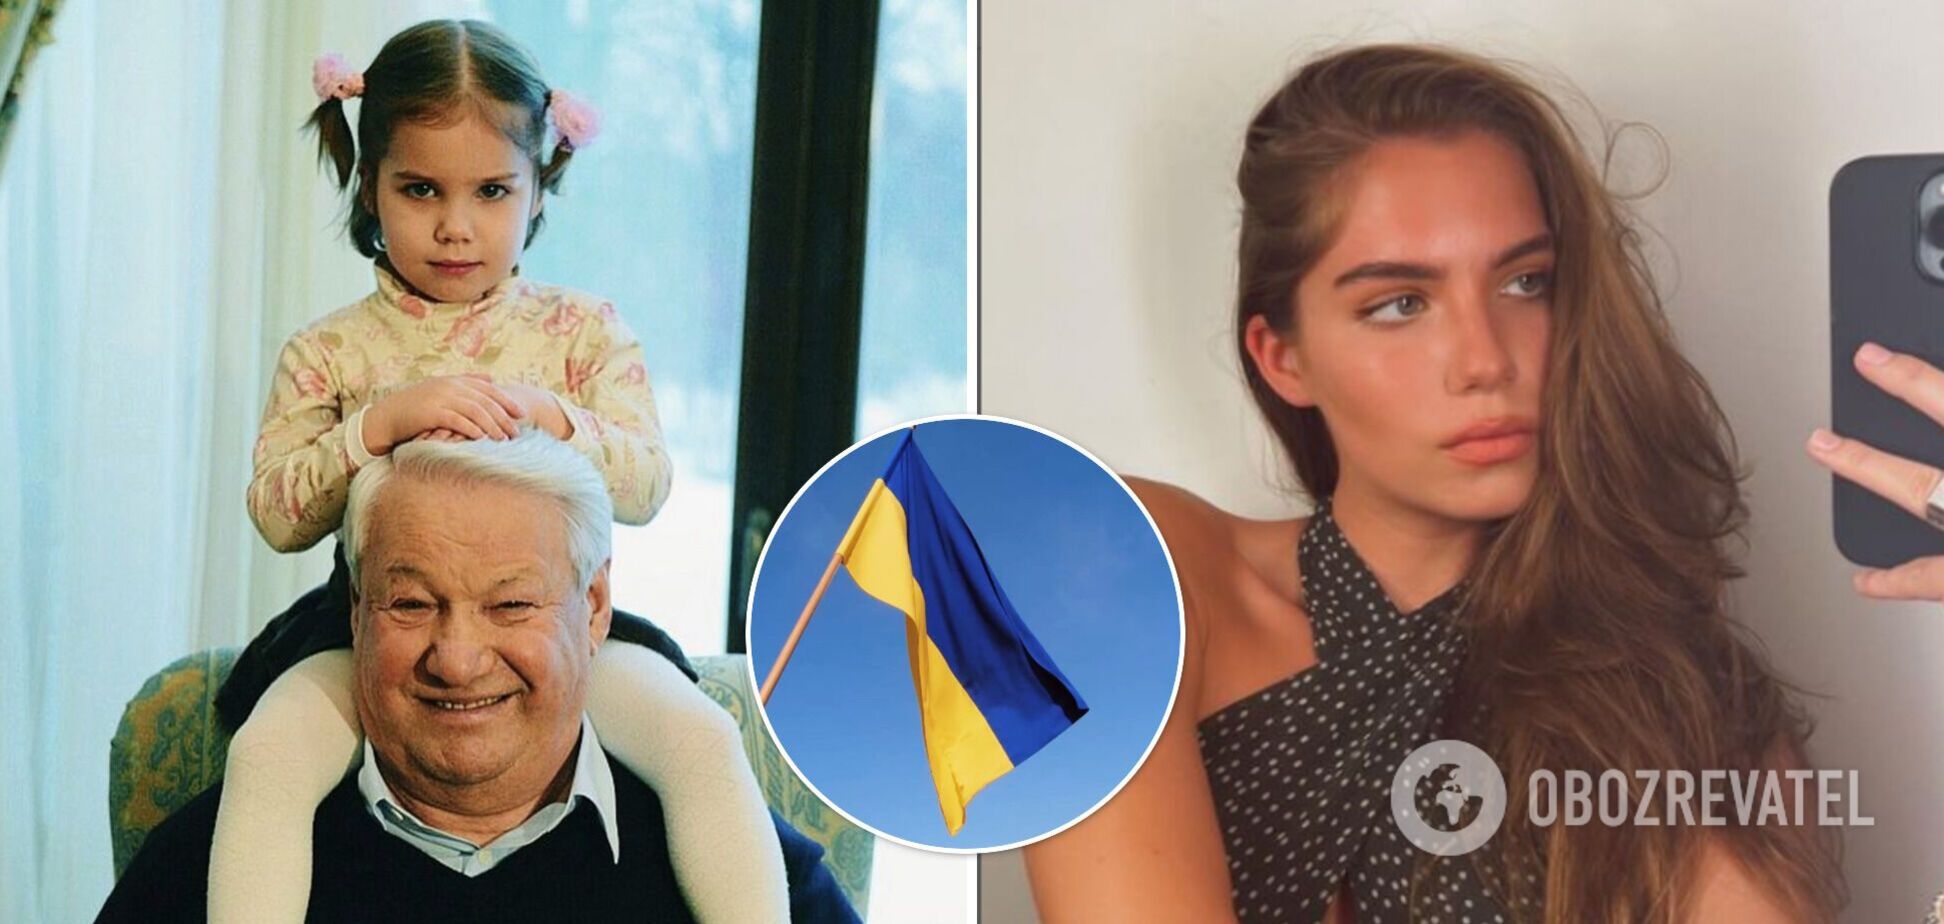 Онука та дочка експрезидента, який привів до влади Путіна, несподівано підтримали Україну